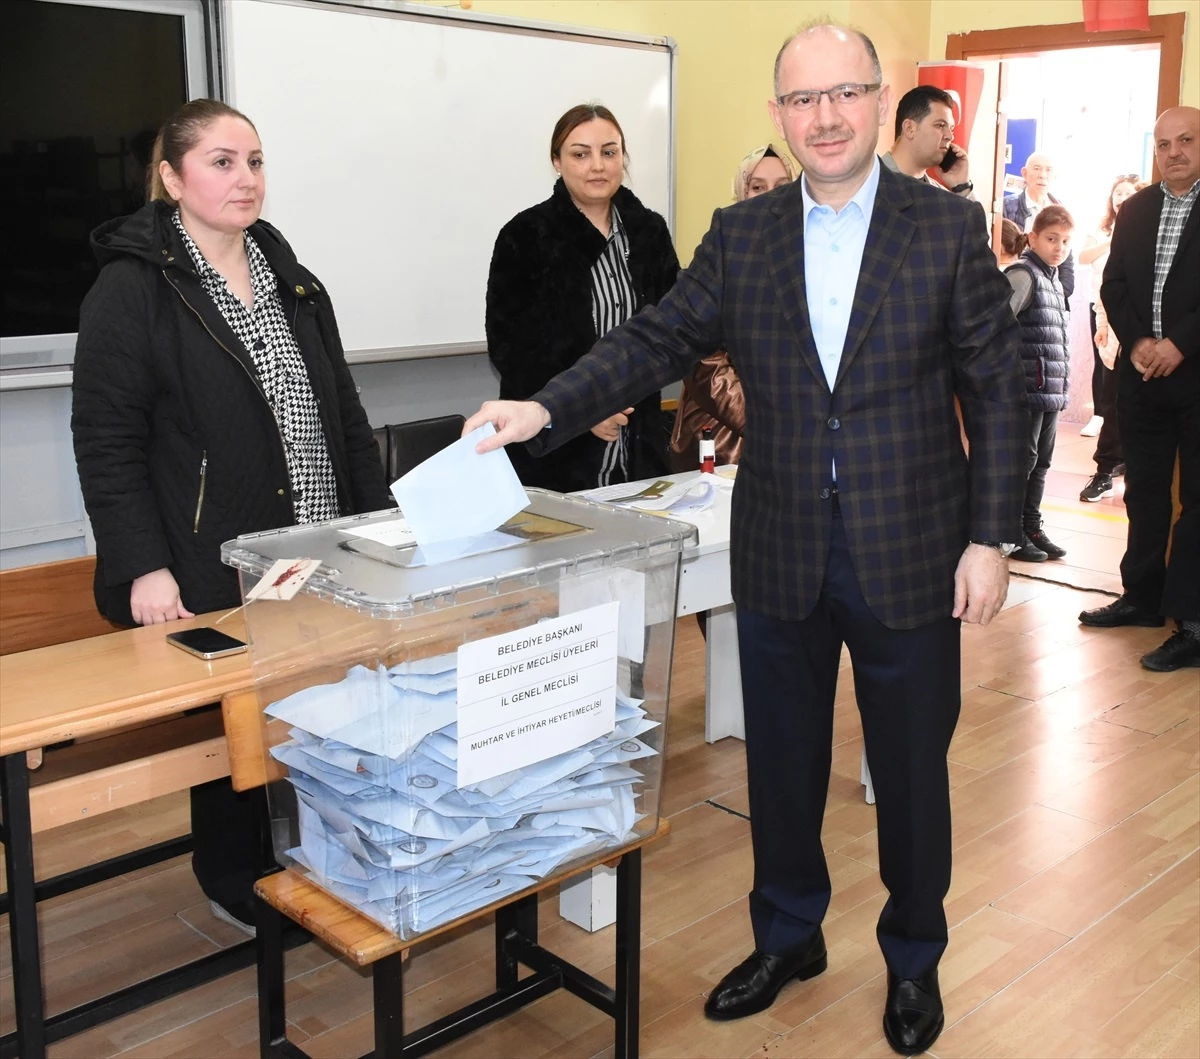 Giresun Valisi Mehmet Fatih Serdengeçti, seçimlerin sorunsuz başladığını söyledi